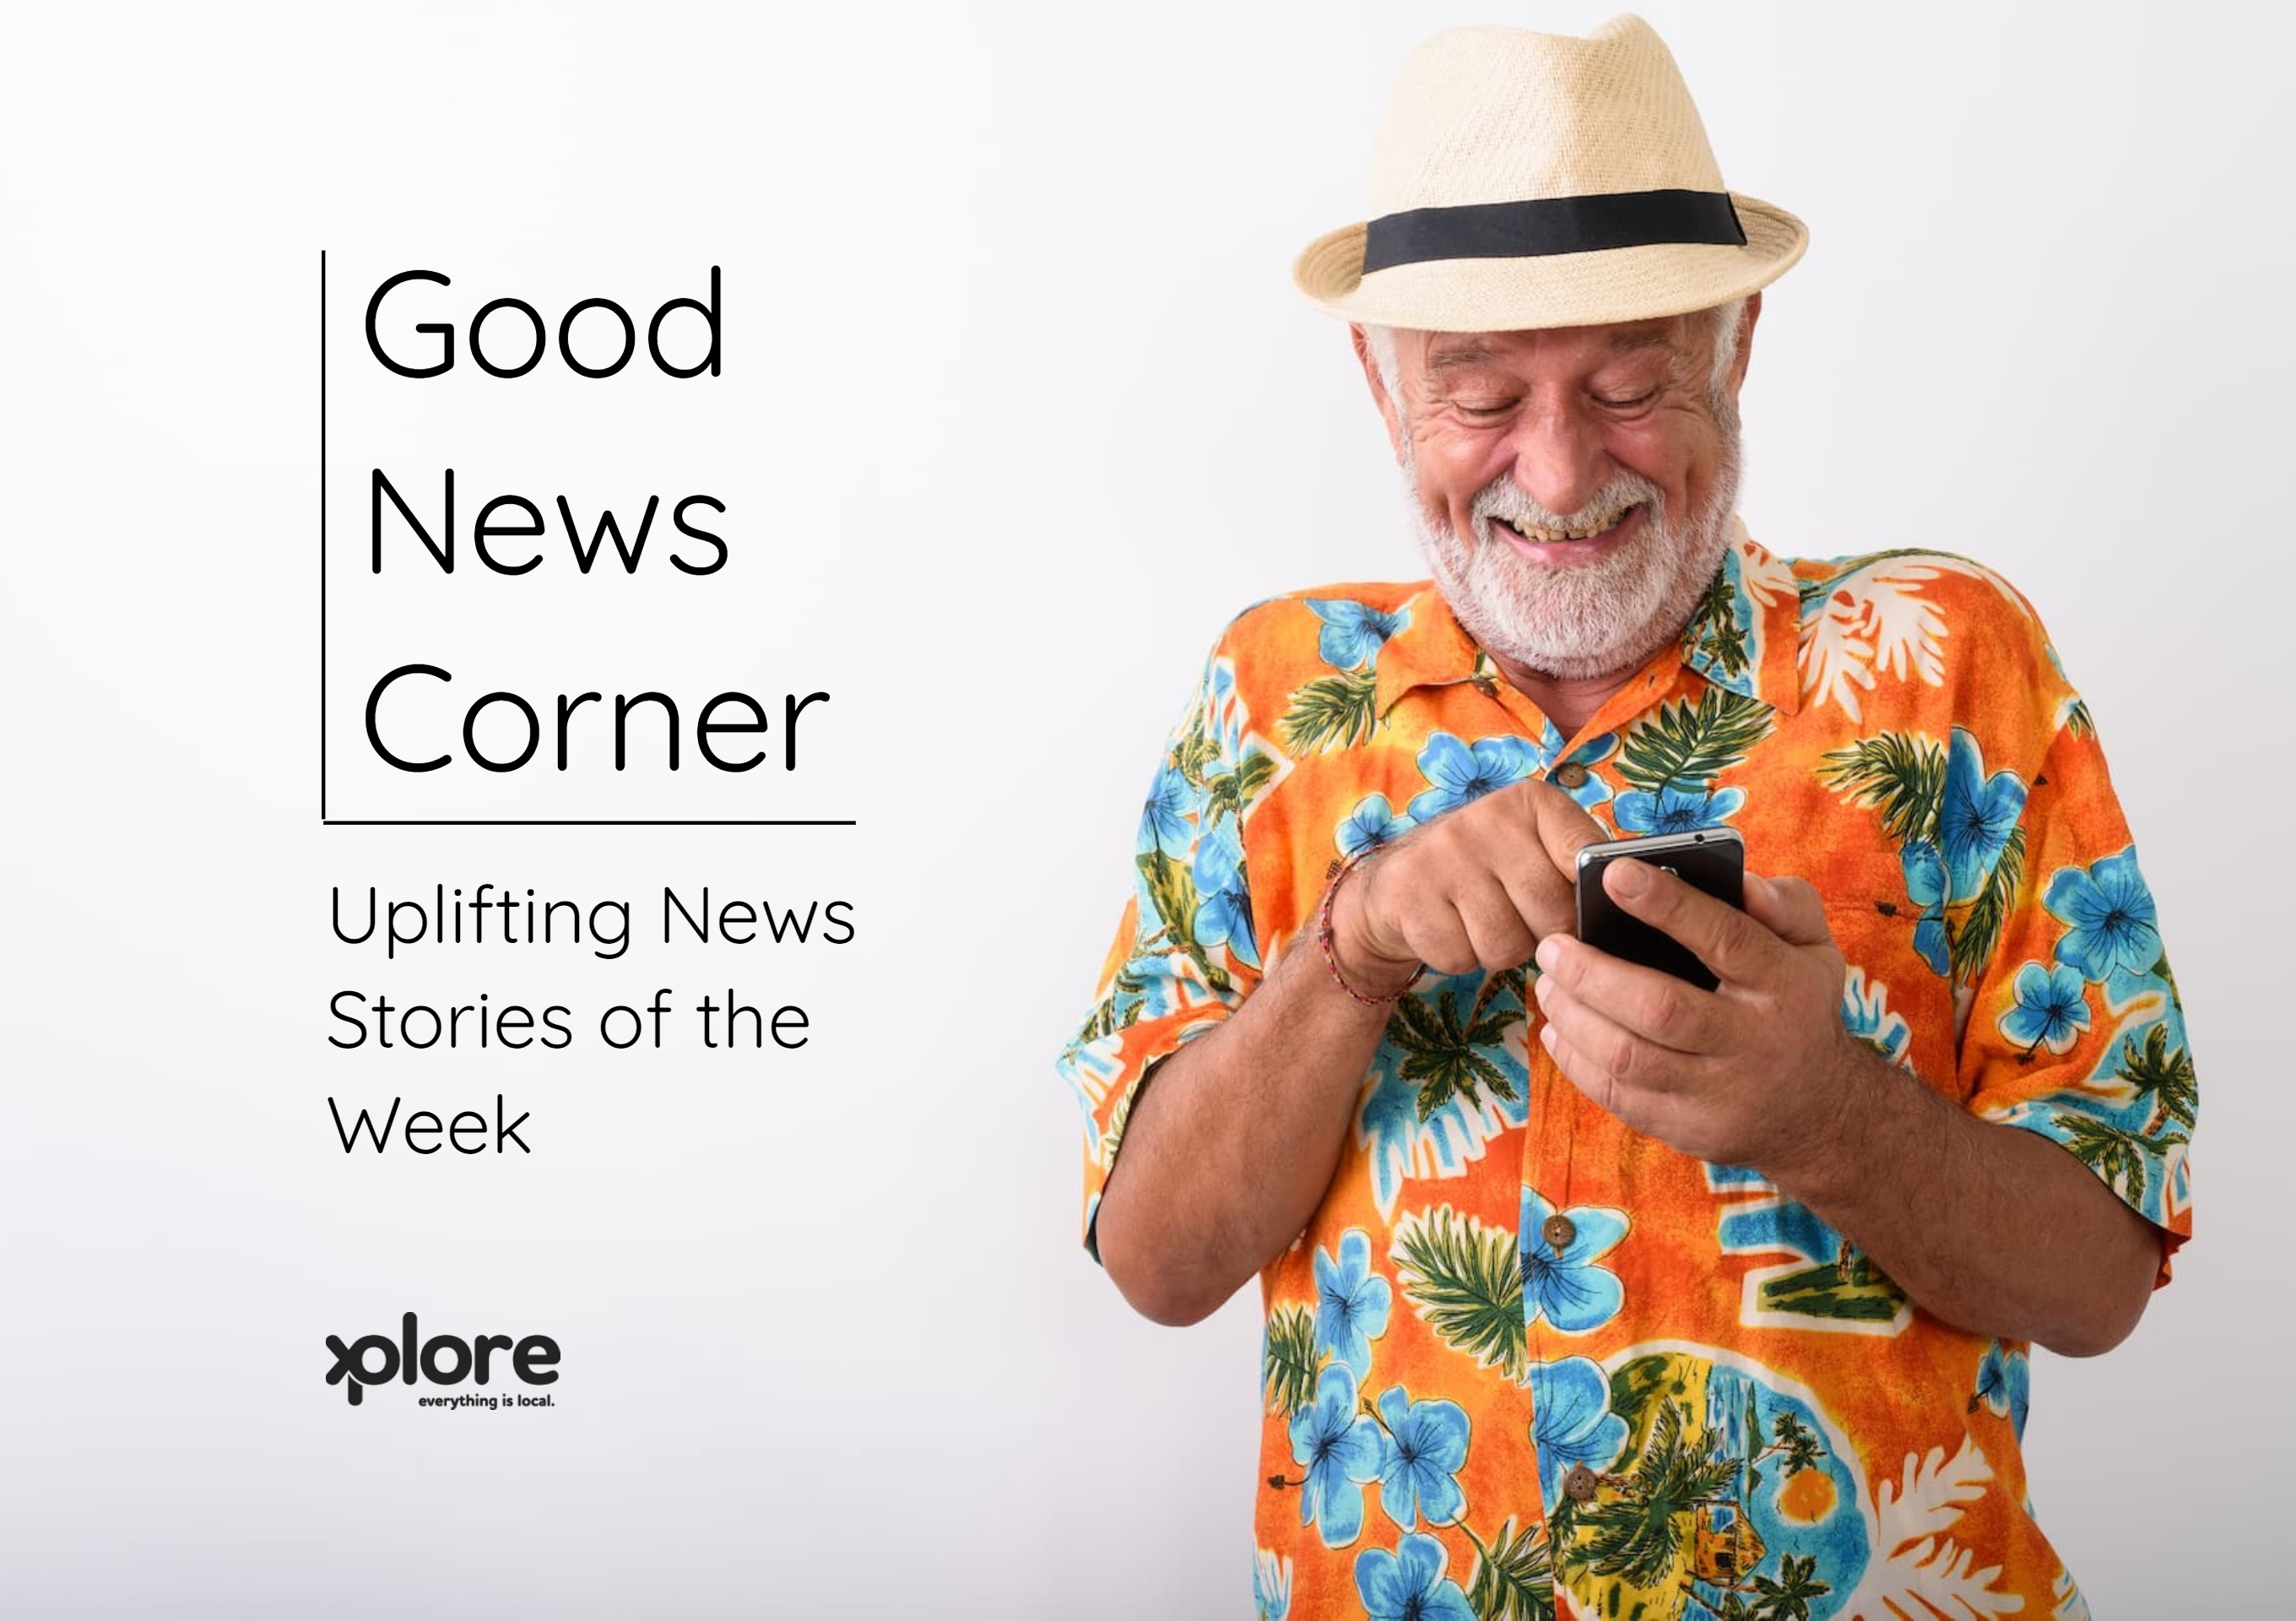 Good News Corner